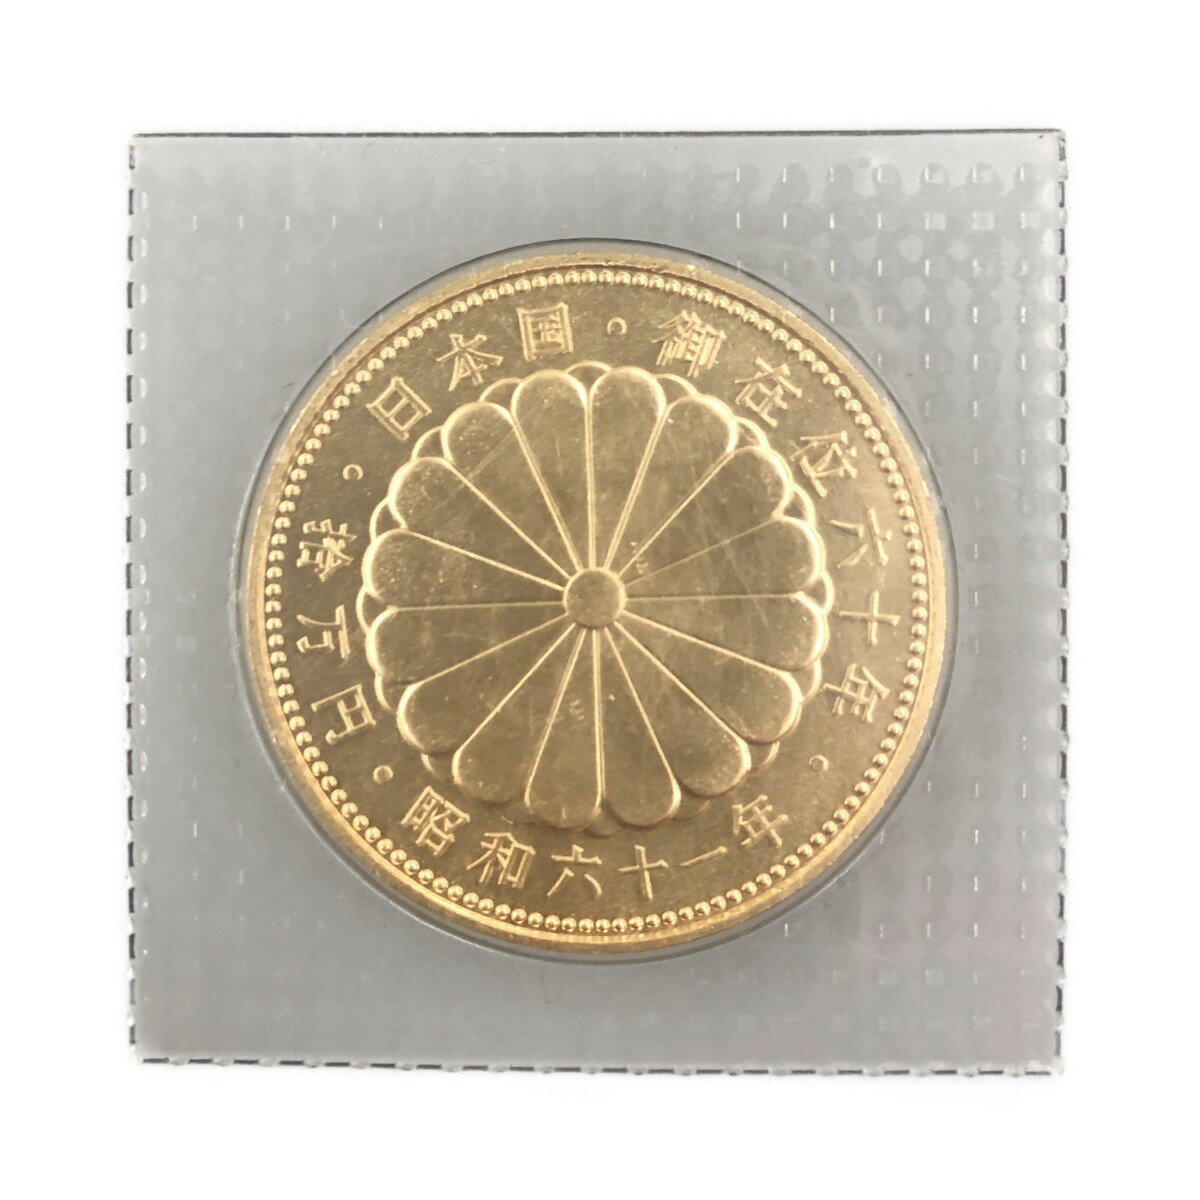 〇〇【中古】 天皇陛下御在位60年記念 10万円金貨 K24 20g ゴールド Nランク